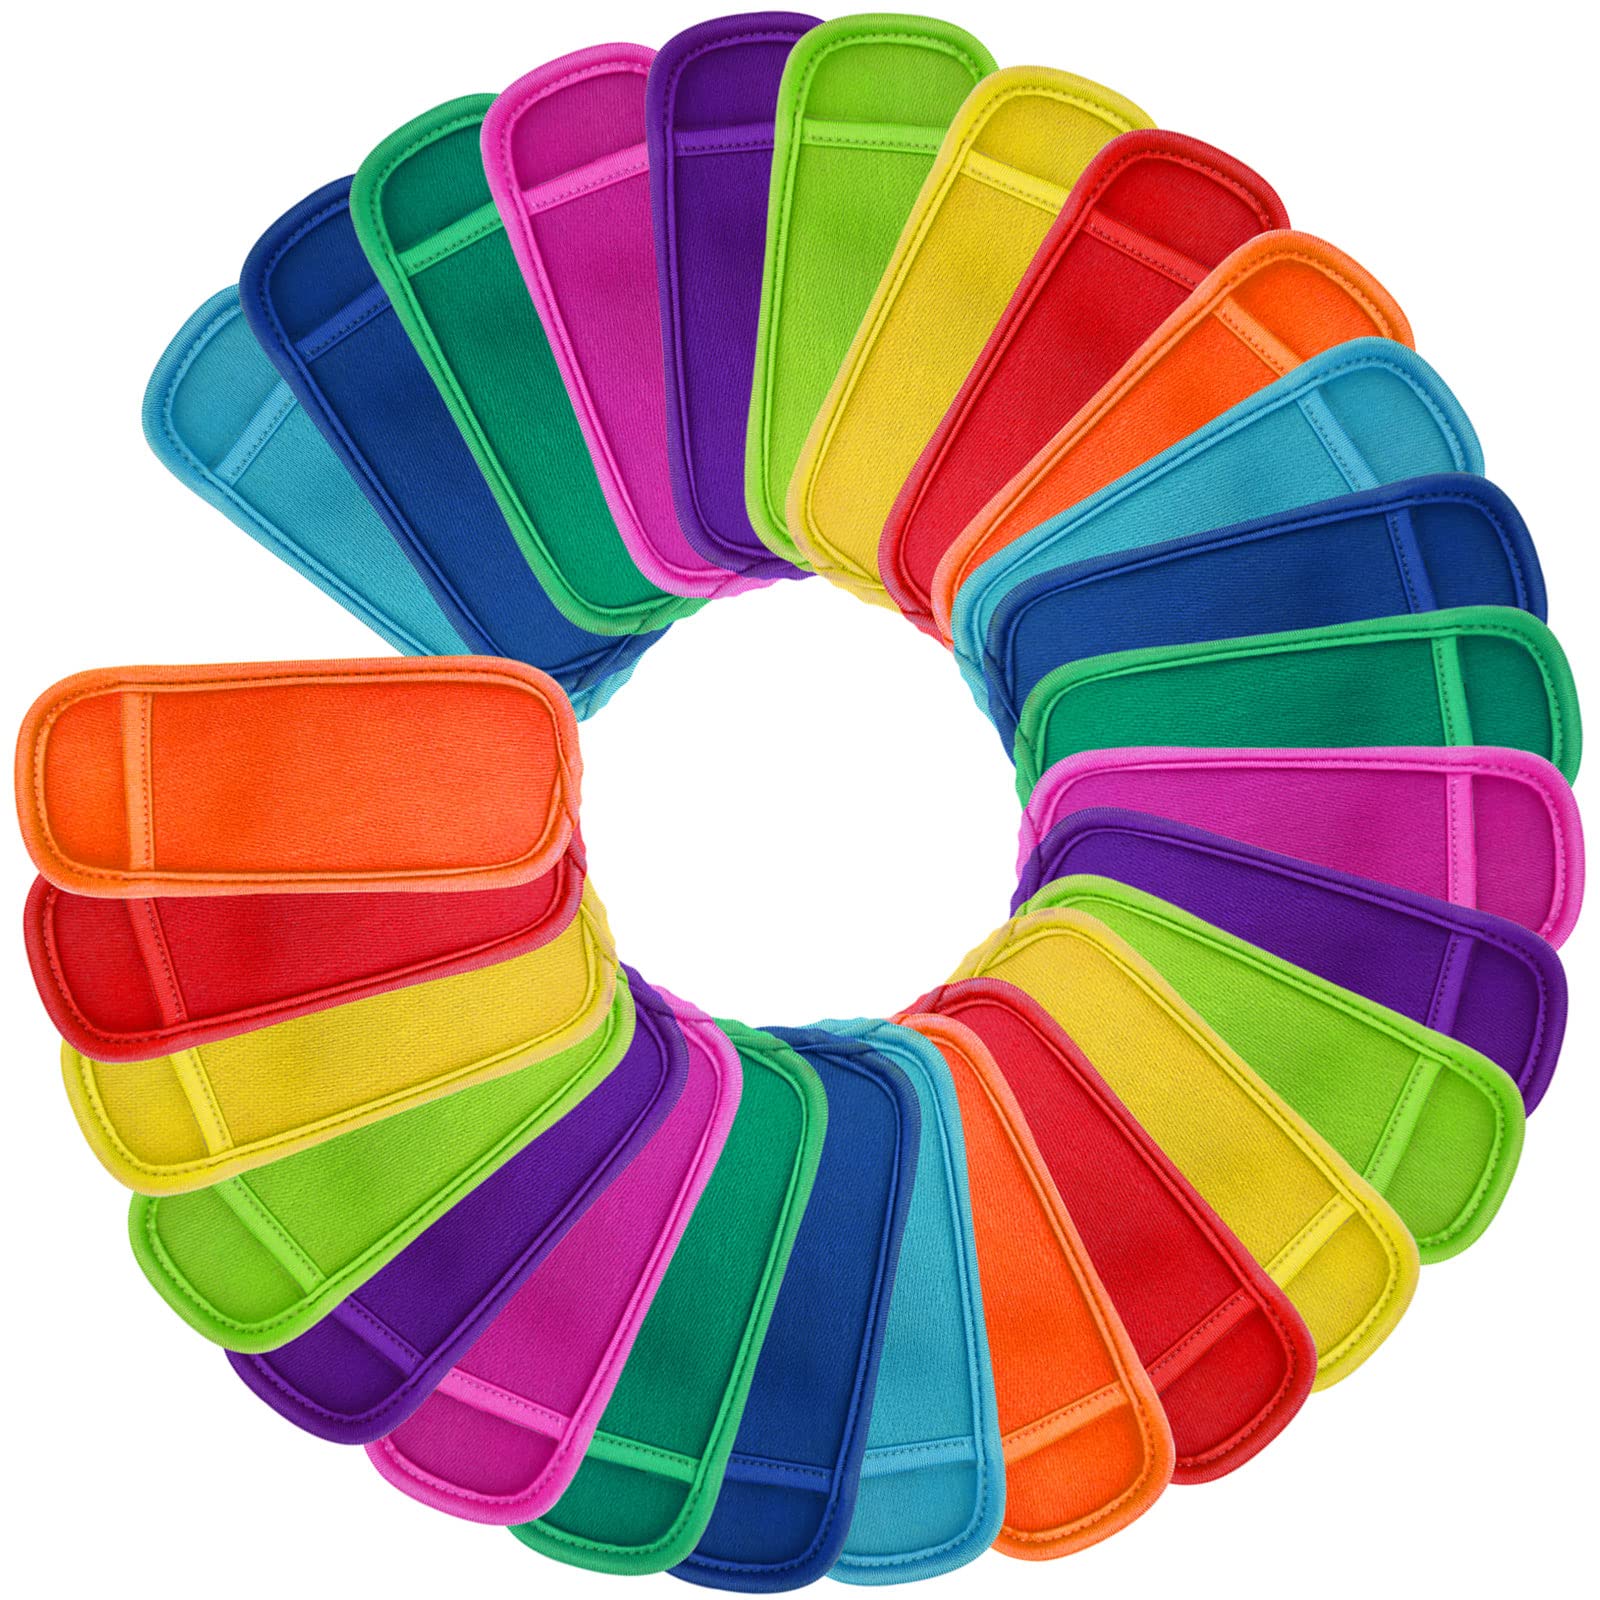 16 piezas en 9 colores reutilizables para paletas de helados